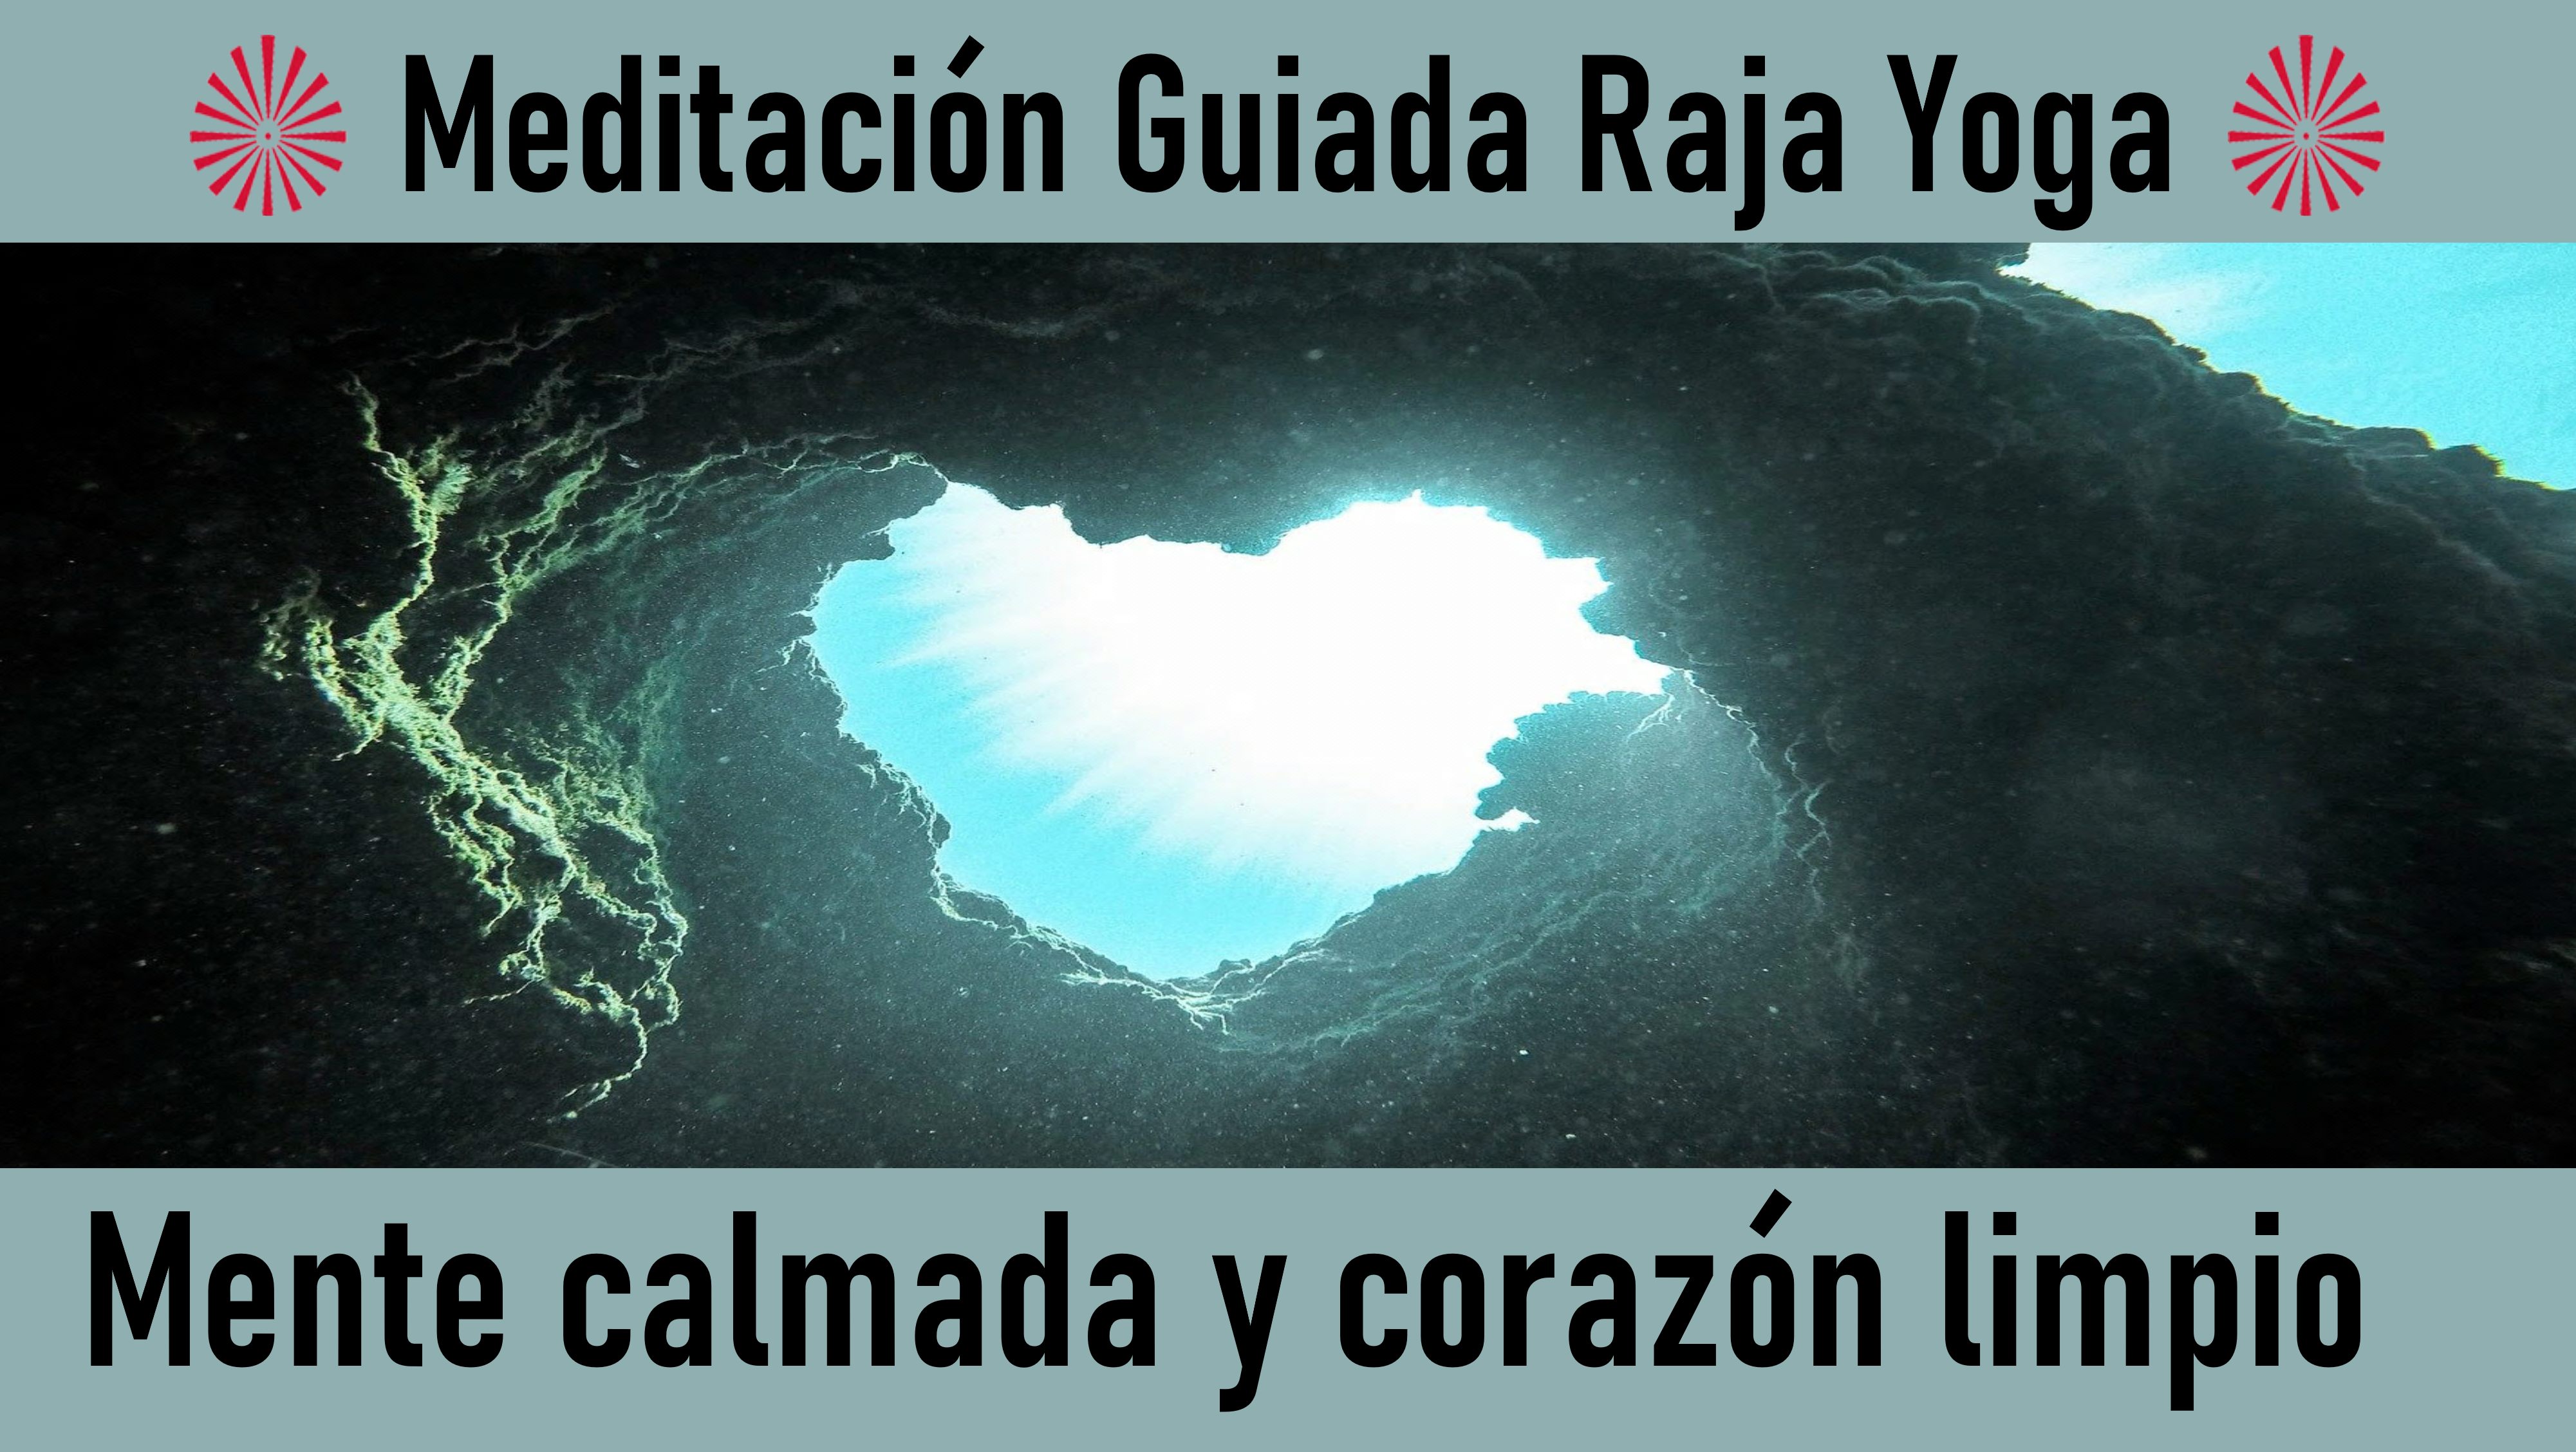 Meditación Raja Yoga: Mente calmada y corazón limpio (27 Mayo 2020) On-line desde Madrid